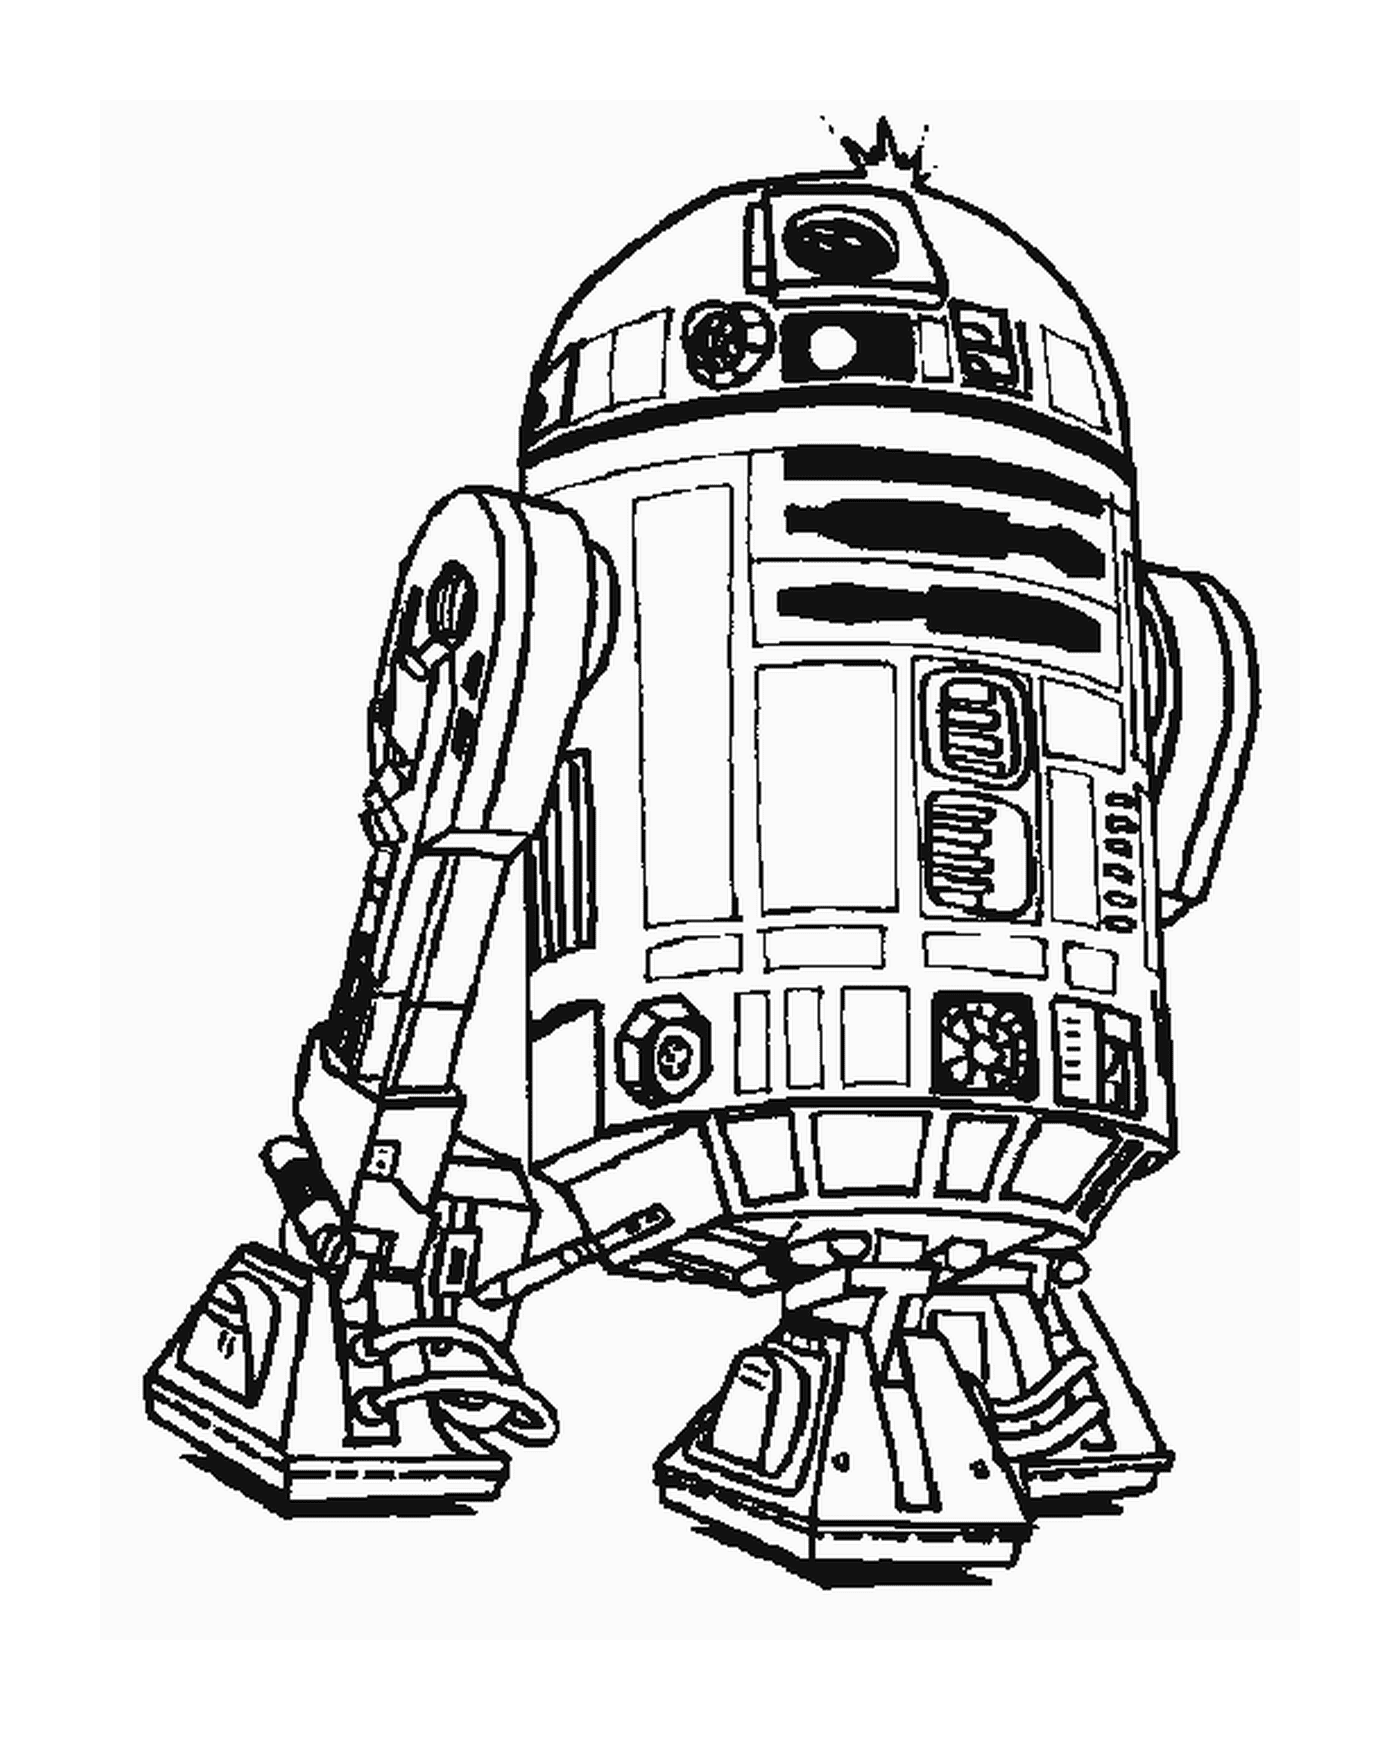  Dibujo de un robot R2-D2 